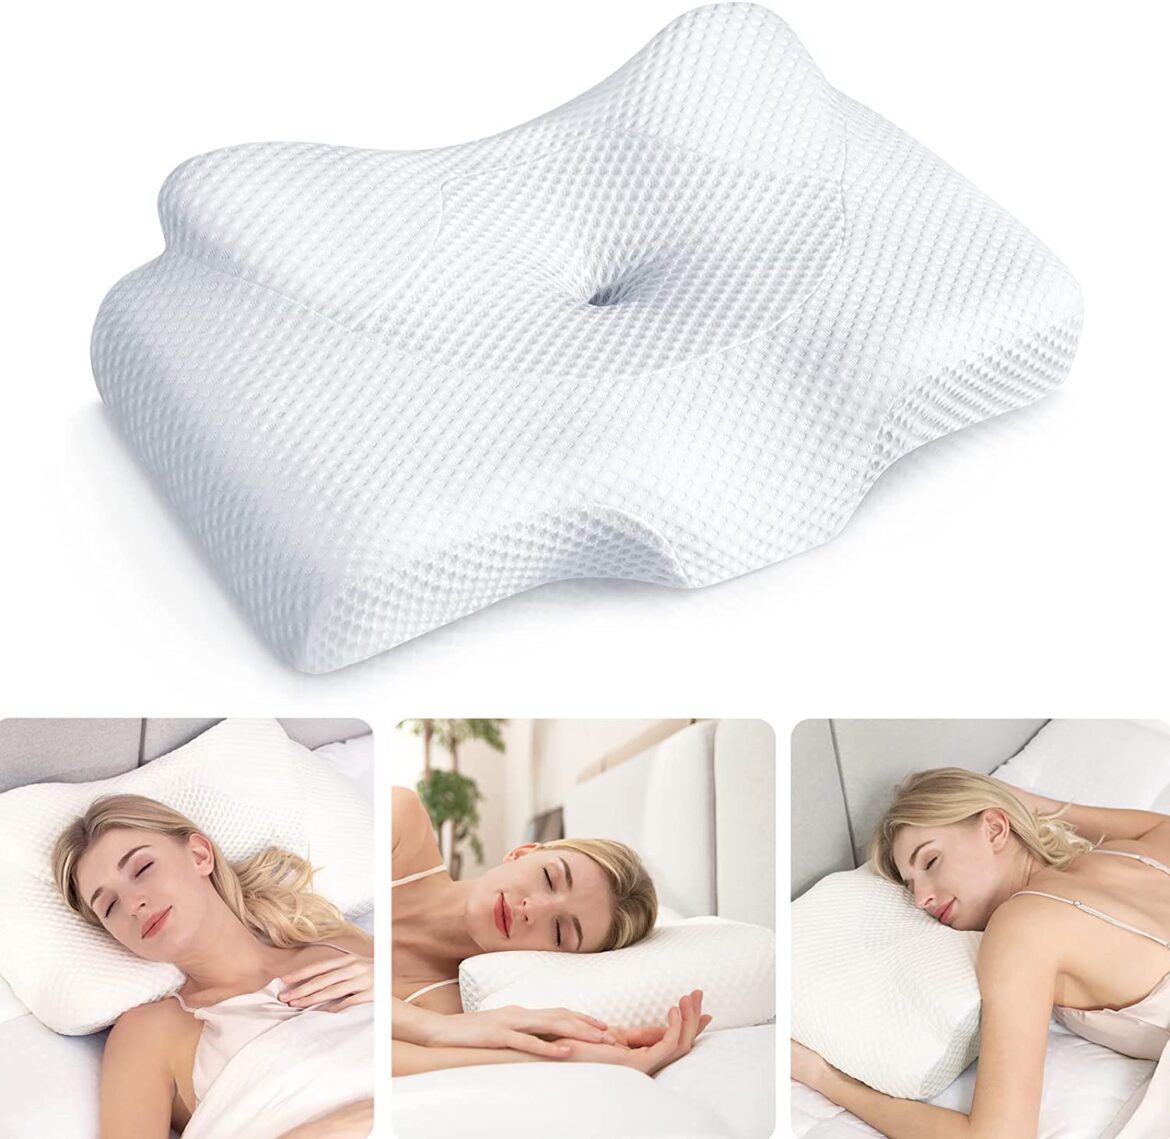 Simply Sova Shredded Memory Foam Pillow - Best Pillows for Neck Pain